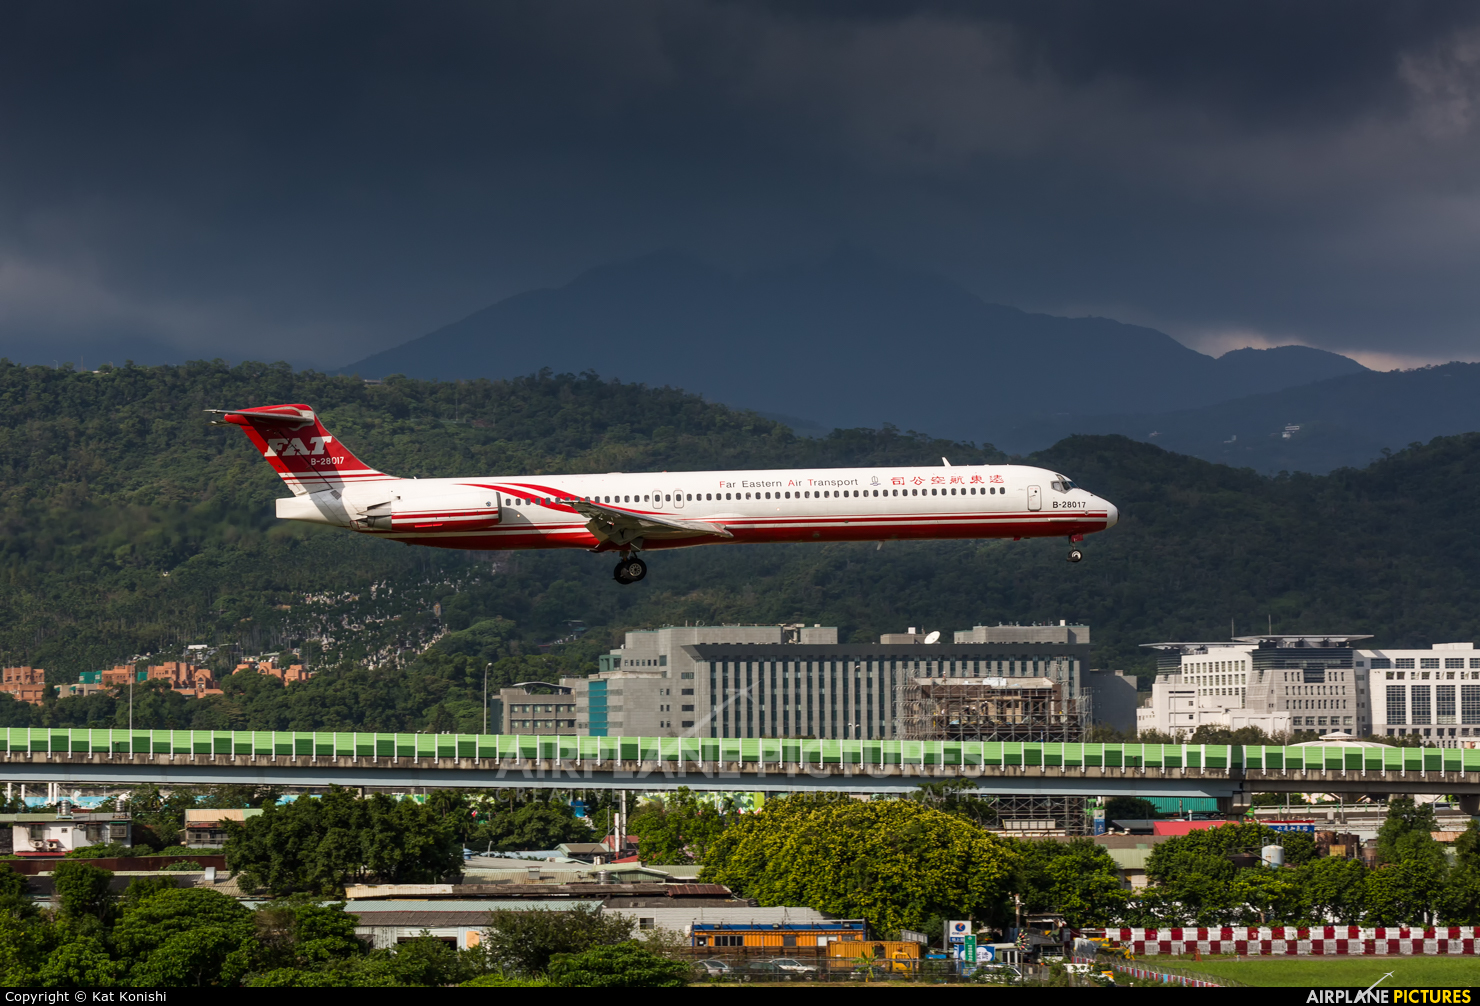 Far Eastern Air Transport B-28017 aircraft at Taipei Sung Shan/Songshan Airport